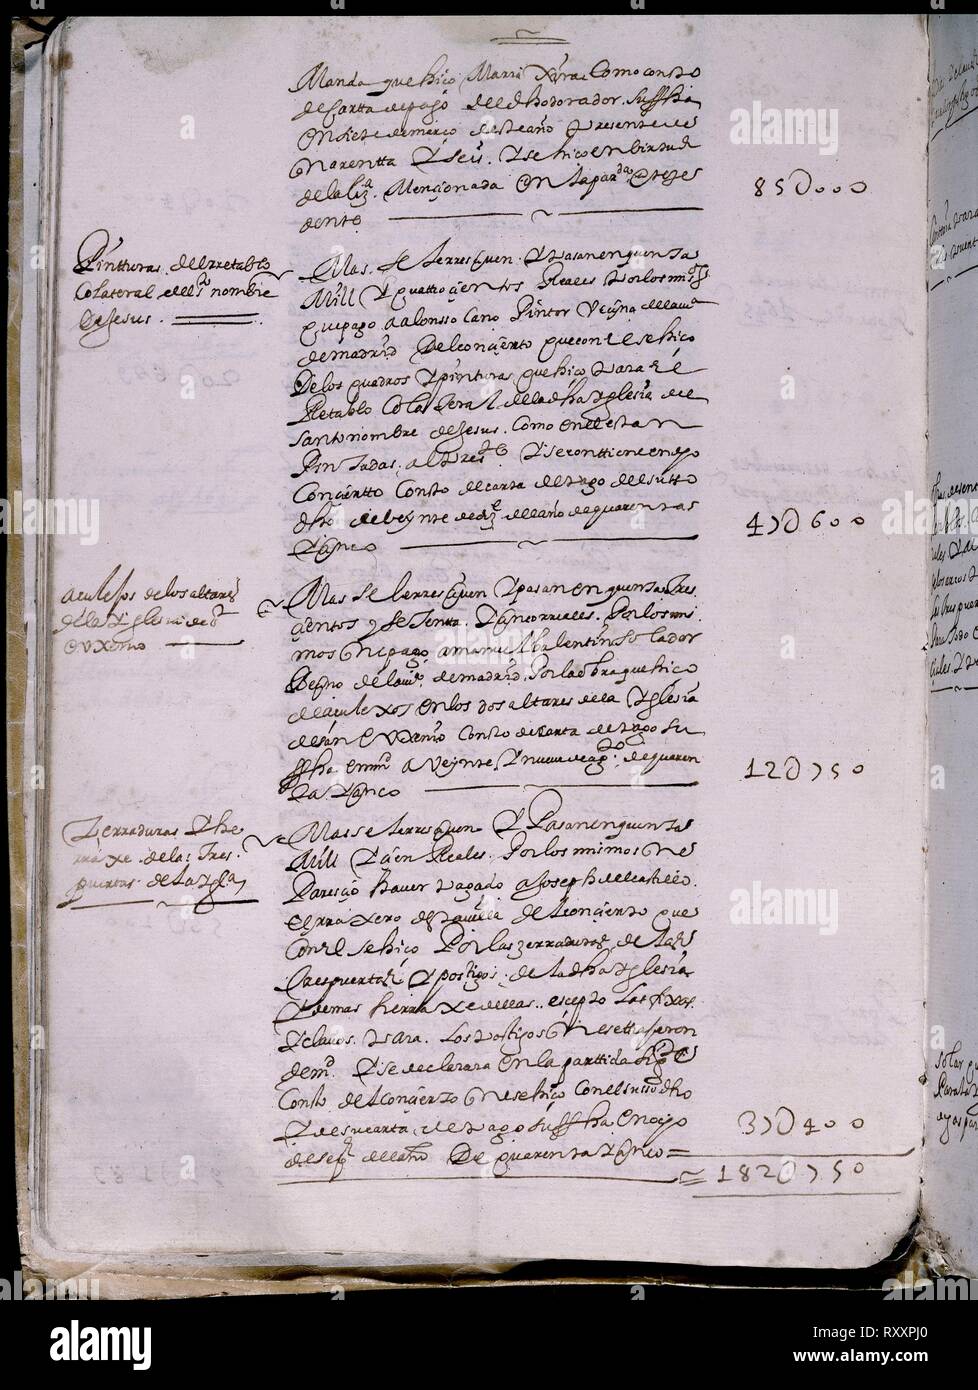 LIBRO DE FABRICA - CUENTAS DE LA CATEDRAL DE GETAFE - Nº4 - FOLIO 24V - AÑOS 1644 A 1692. Location: ARCHIVO HISTORICO DIOCESANO. GETAFE. MADRID. SPAIN. Stock Photo